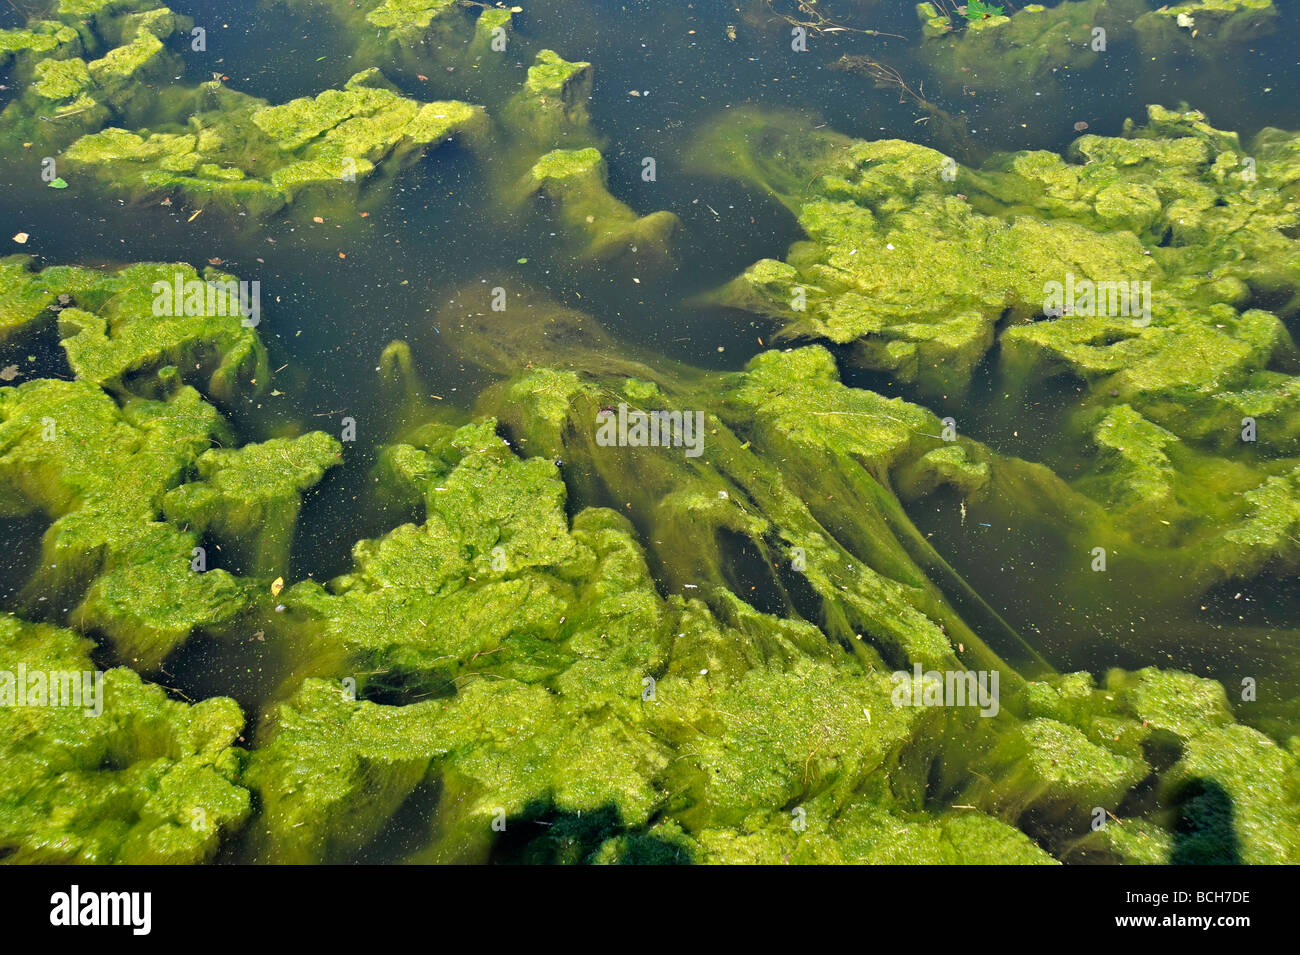 green algae in river Stock Photo